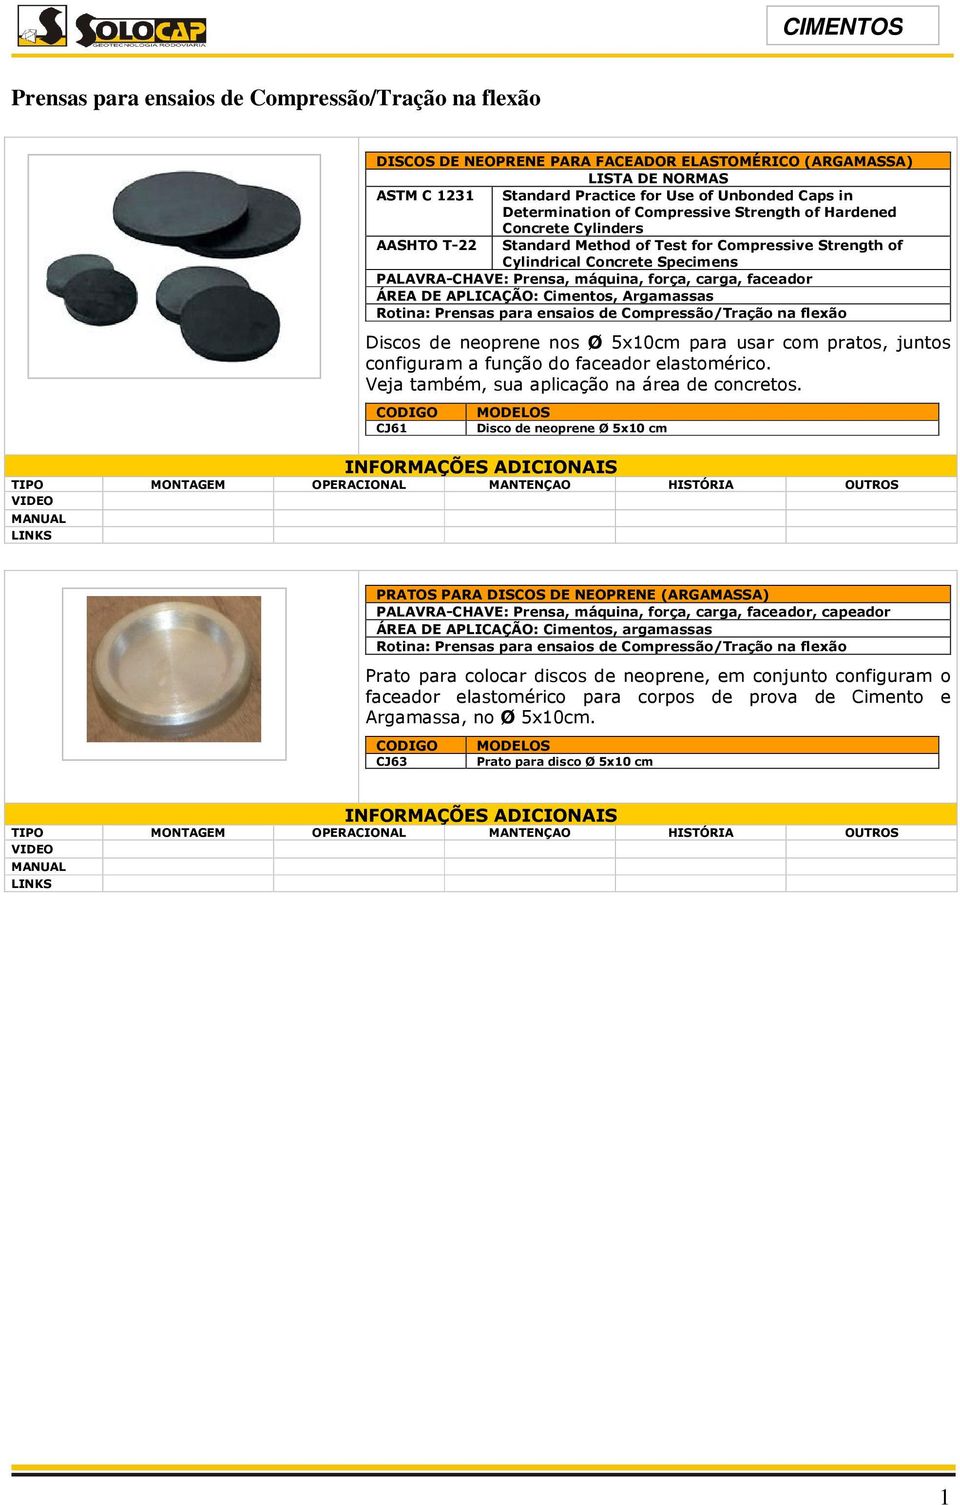 Argamassas Rotina: Prensas para ensaios de Compressão/Tração na flexão Discos de neoprene nos Ø 5x10cm para usar com pratos, juntos configuram a função do faceador elastomérico.